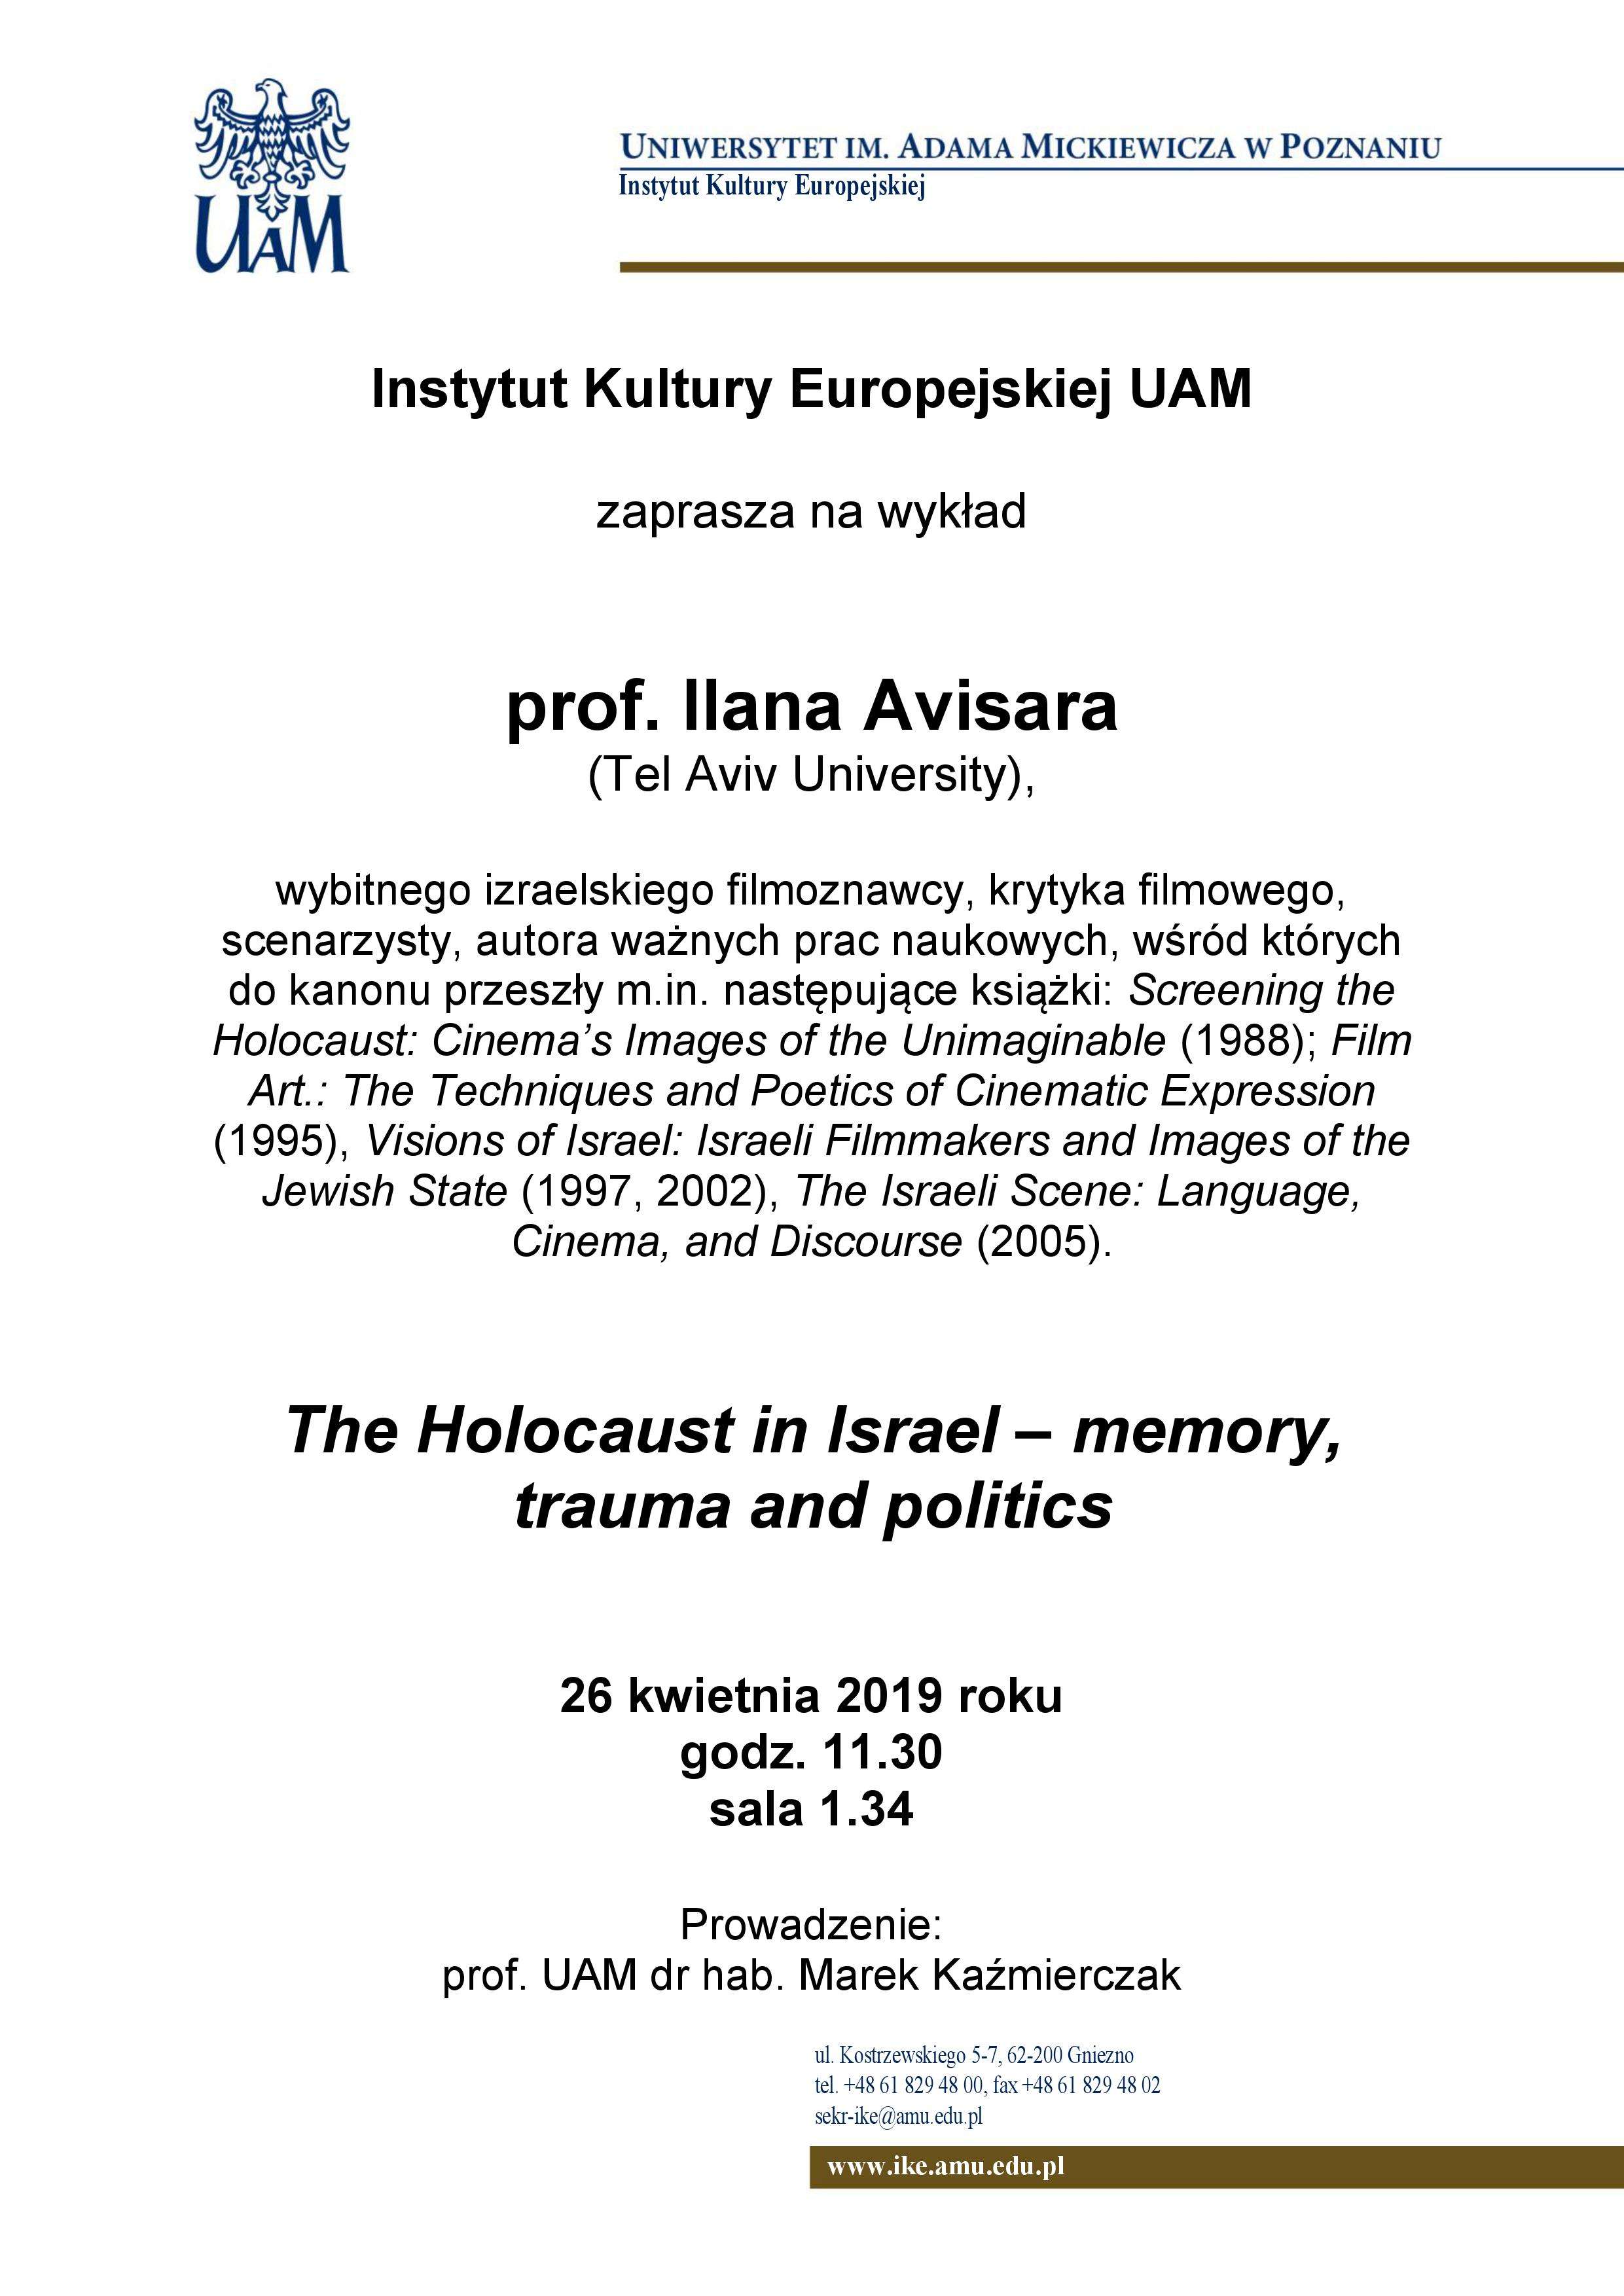 Wykład prof. Ilana Avisara (Tel Aviv University) – 26 kwietnia 2019 o godz. 11.30